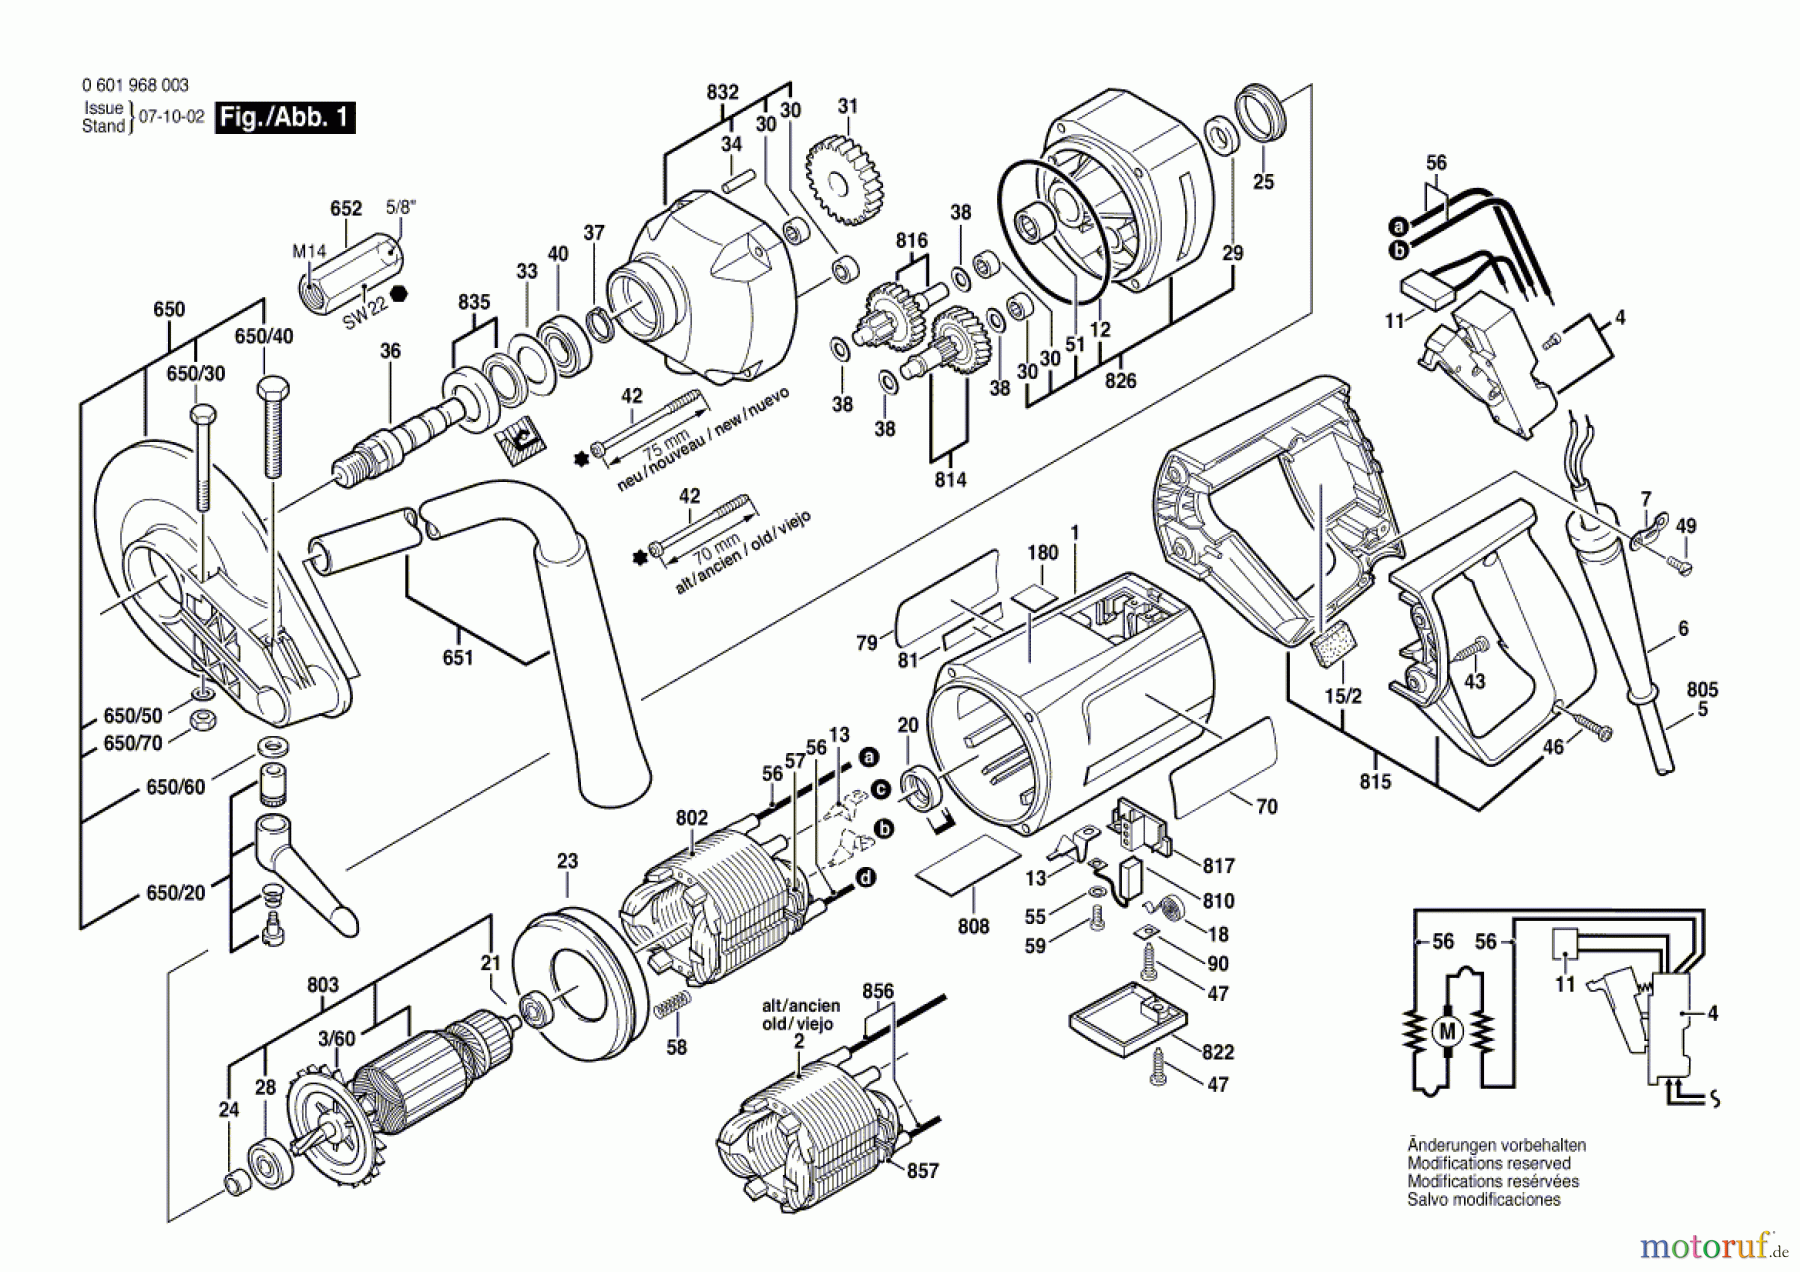  Bosch Werkzeug Rührwerk GRW 9 Seite 1